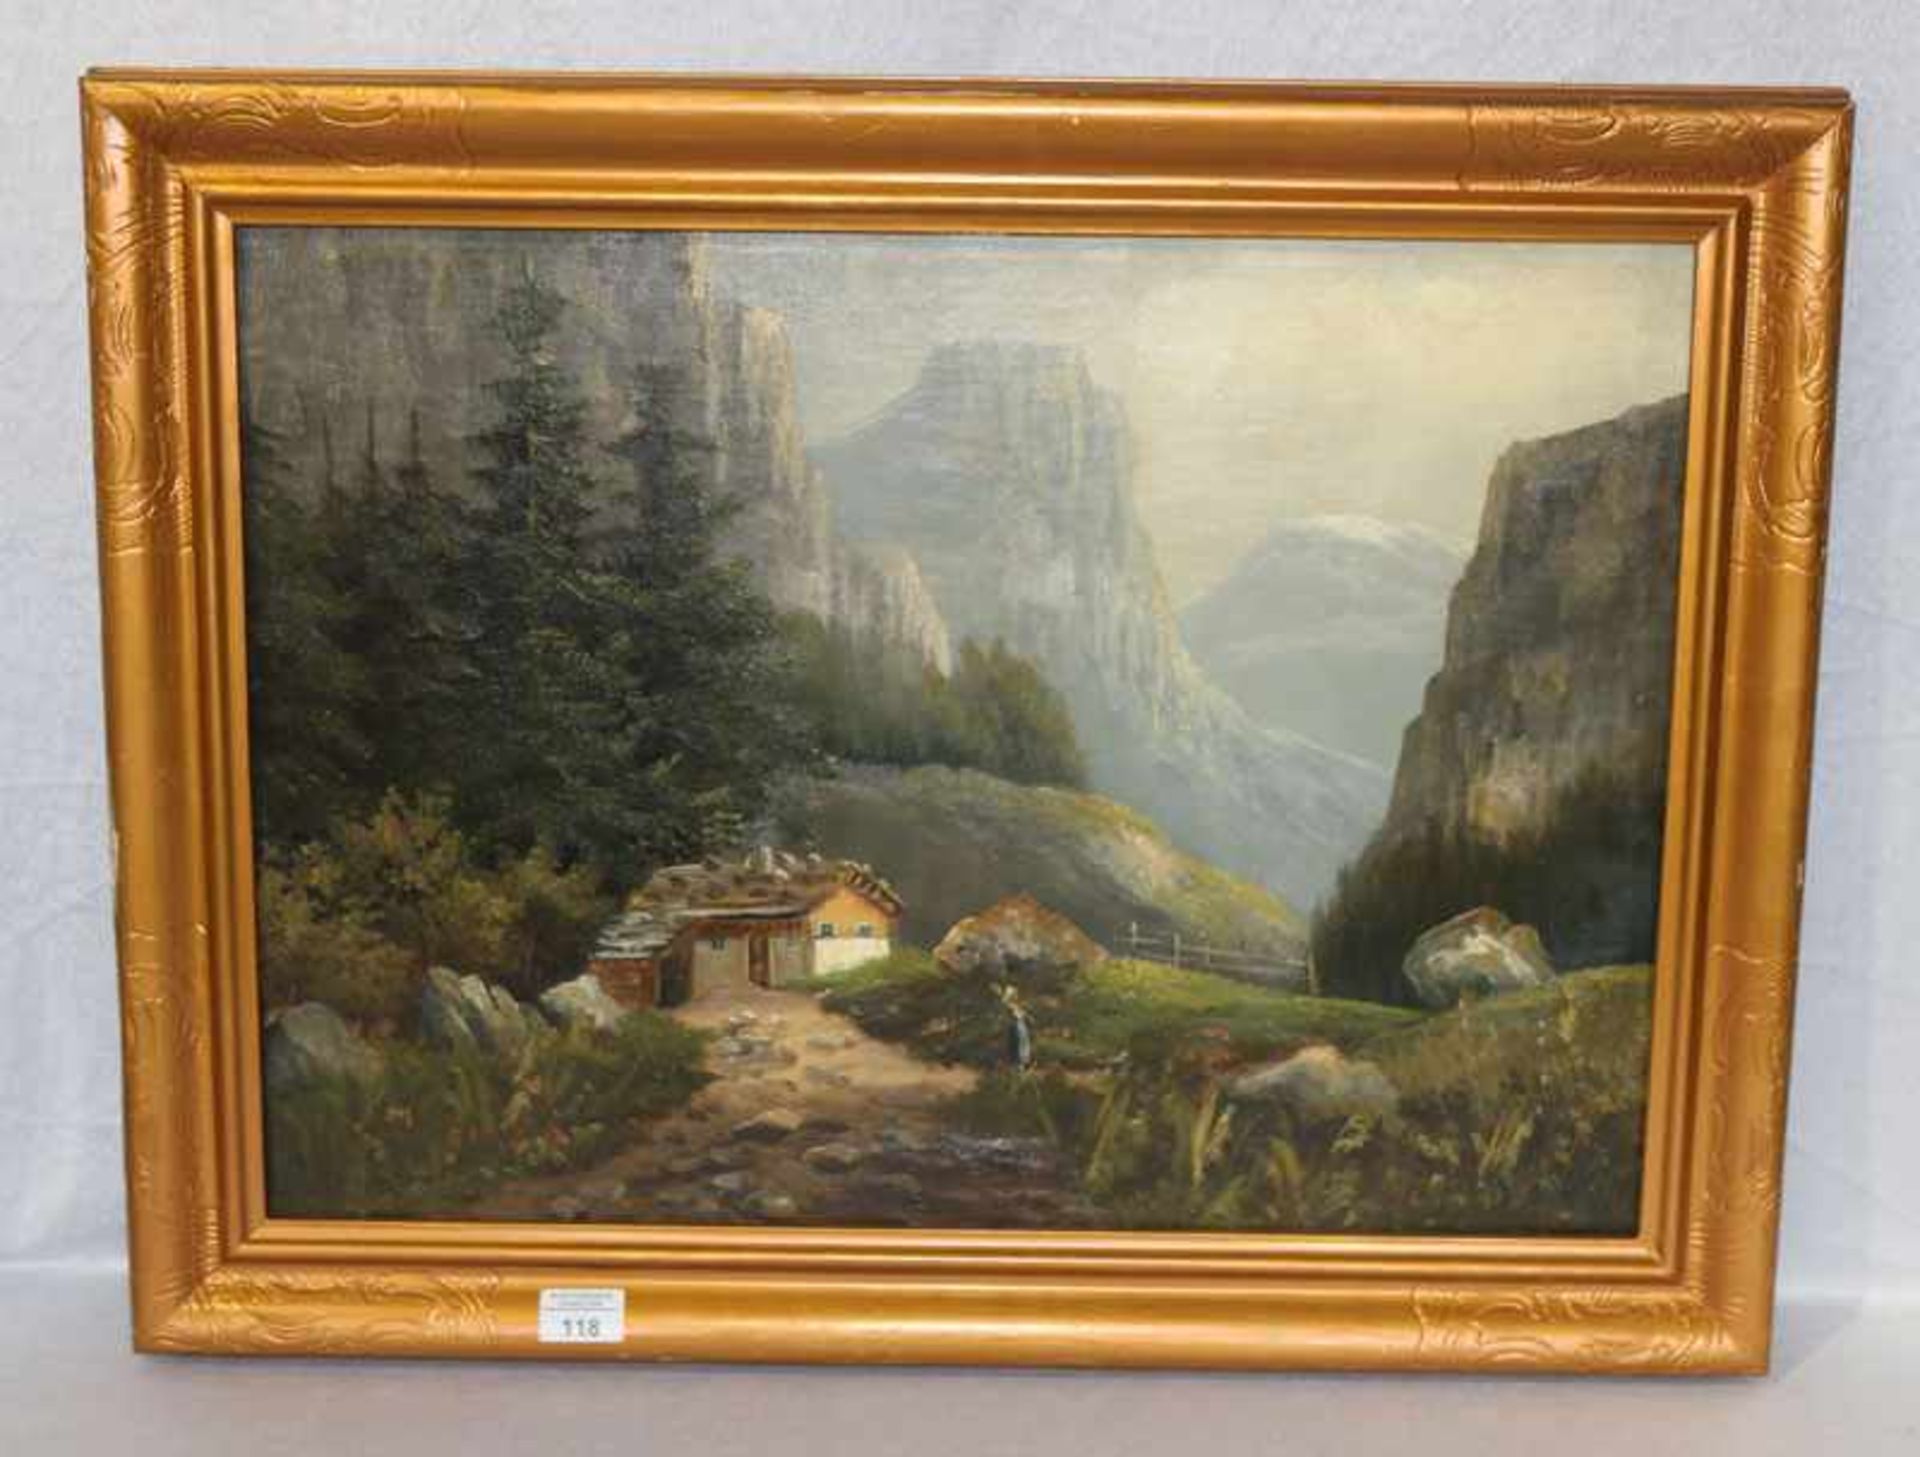 Gemälde ÖL/LW 'Haus im Hochgebirge', gerahmt, Rahmen beschädigt, ncl. Rahmen 60 cm x 76 cm